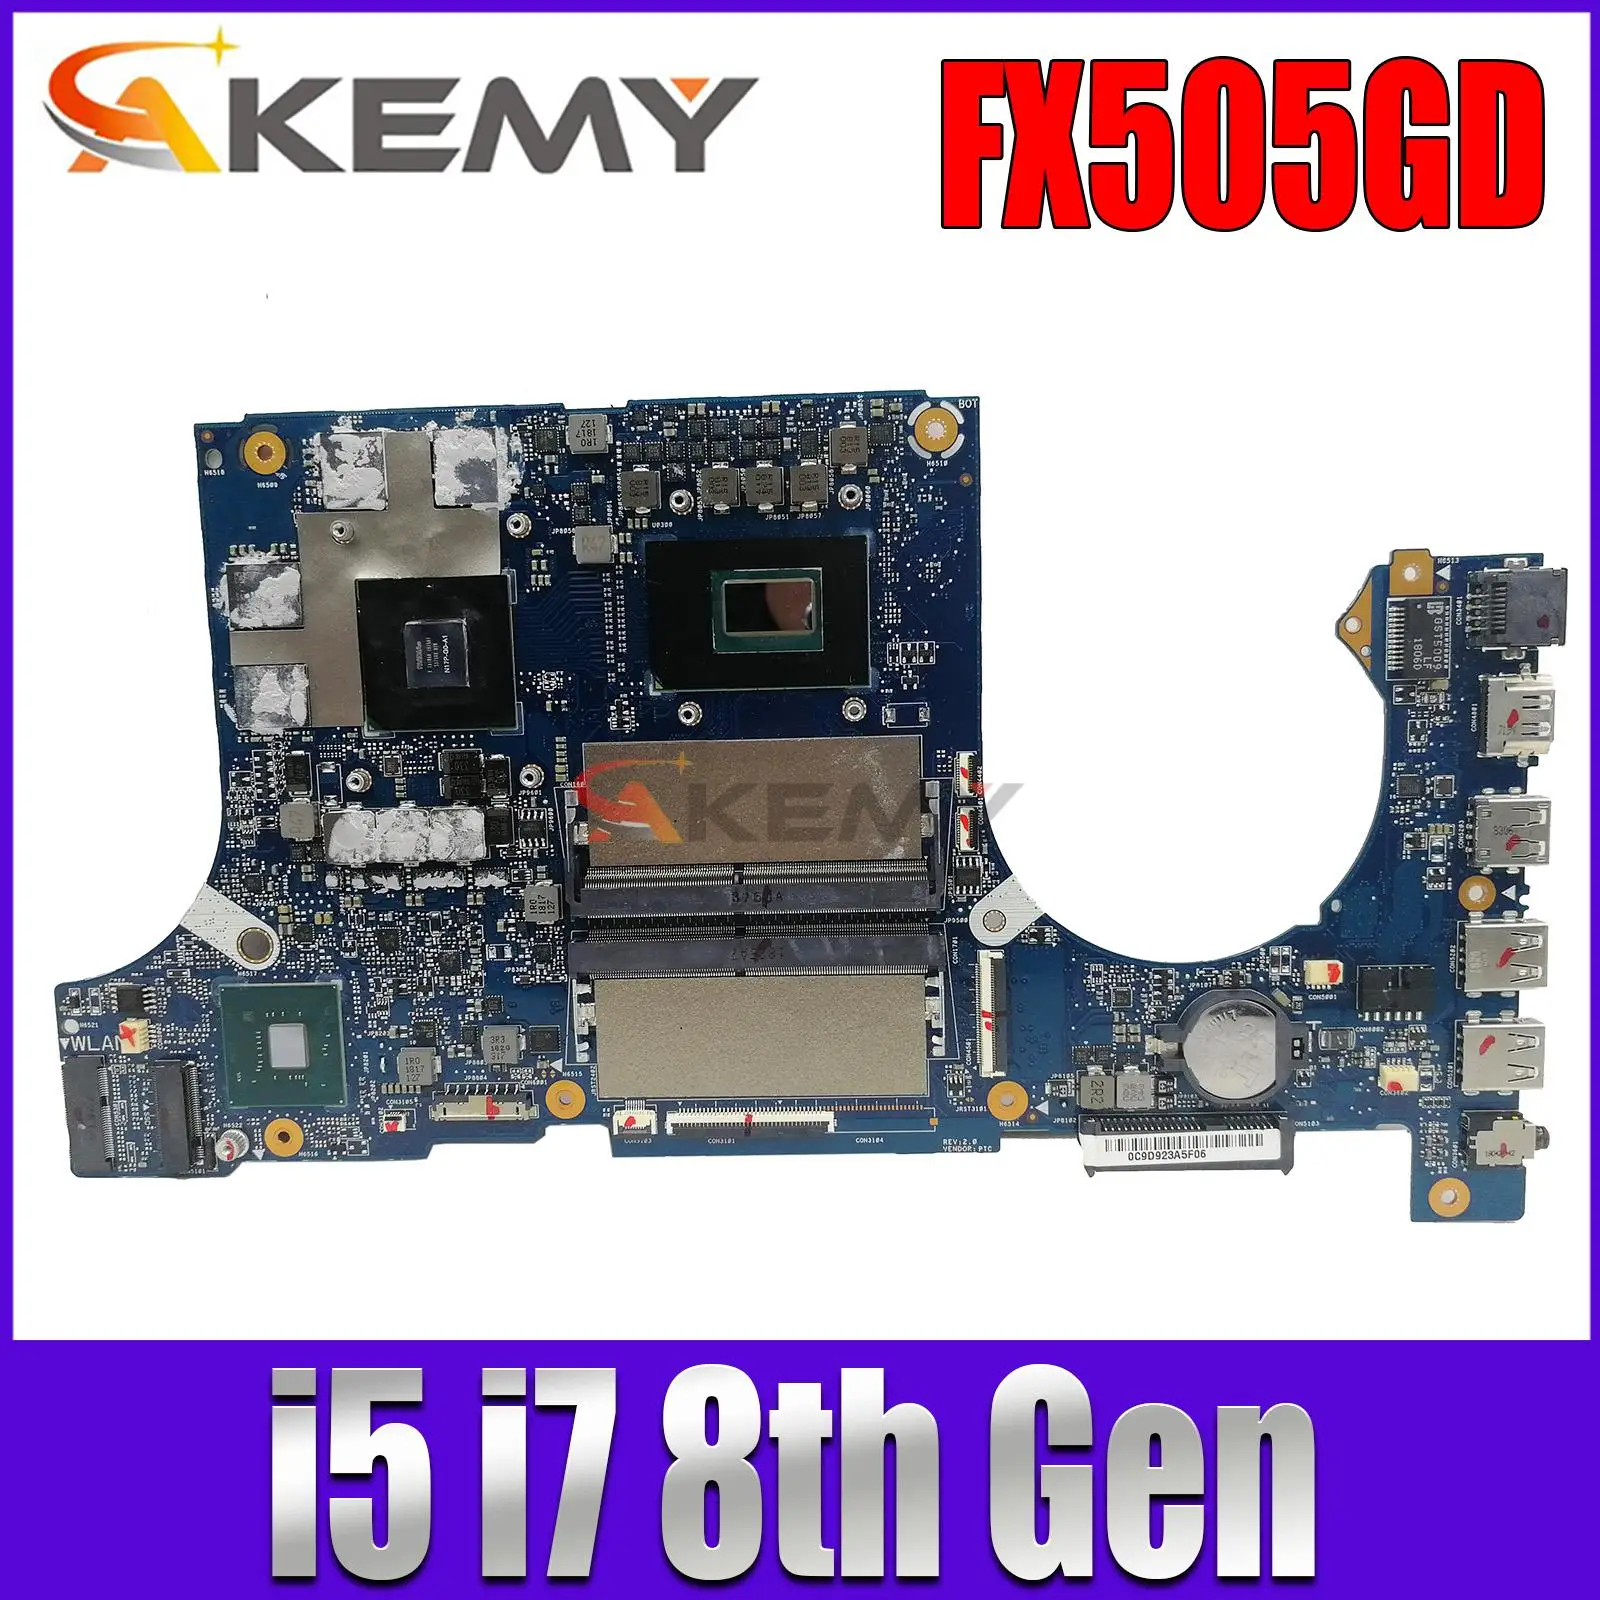 

FX505GM Mainboard For ASUS FX505GD FX505GE FX705GM FX705GD FX705GE MW505G PX505G FX86G Laptop Motherboard i5 i7 8th Gen